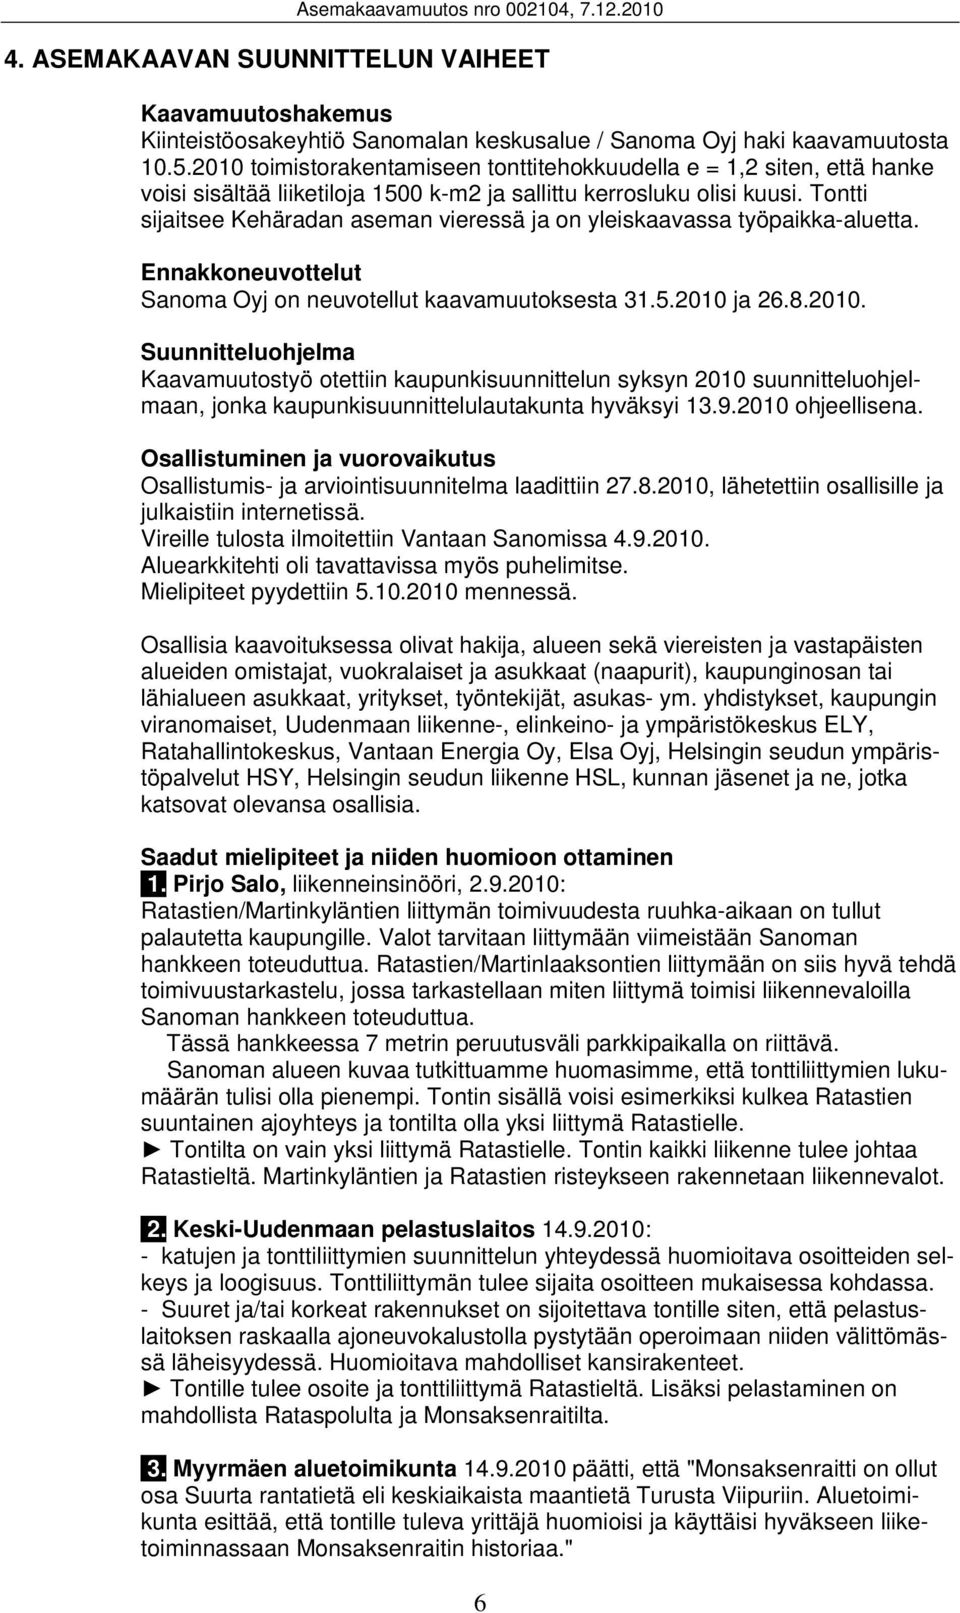 Tontti sijaitsee Kehäradan aseman vieressä ja on yleiskaavassa työpaikka-aluetta. Ennakkoneuvottelut Sanoma Oyj on neuvotellut kaavamuutoksesta 31.5.2010 